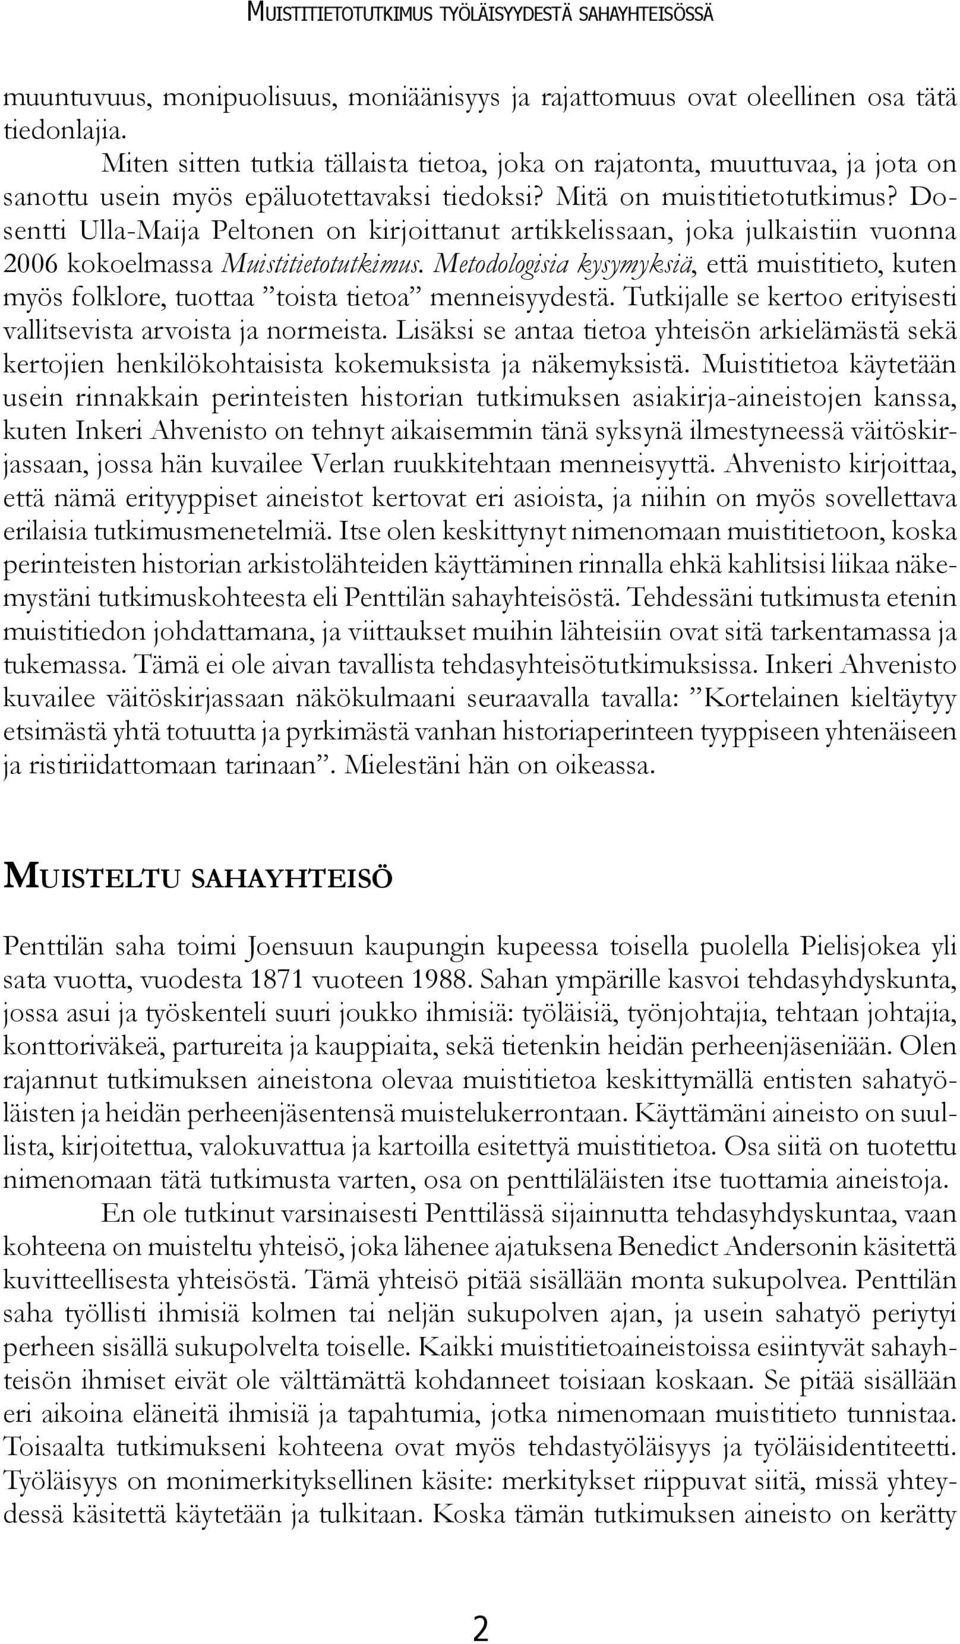 Dosentti Ulla-Maija Peltonen on kirjoittanut artikkelissaan, joka julkaistiin vuonna 2006 kokoelmassa Muistitietotutkimus.